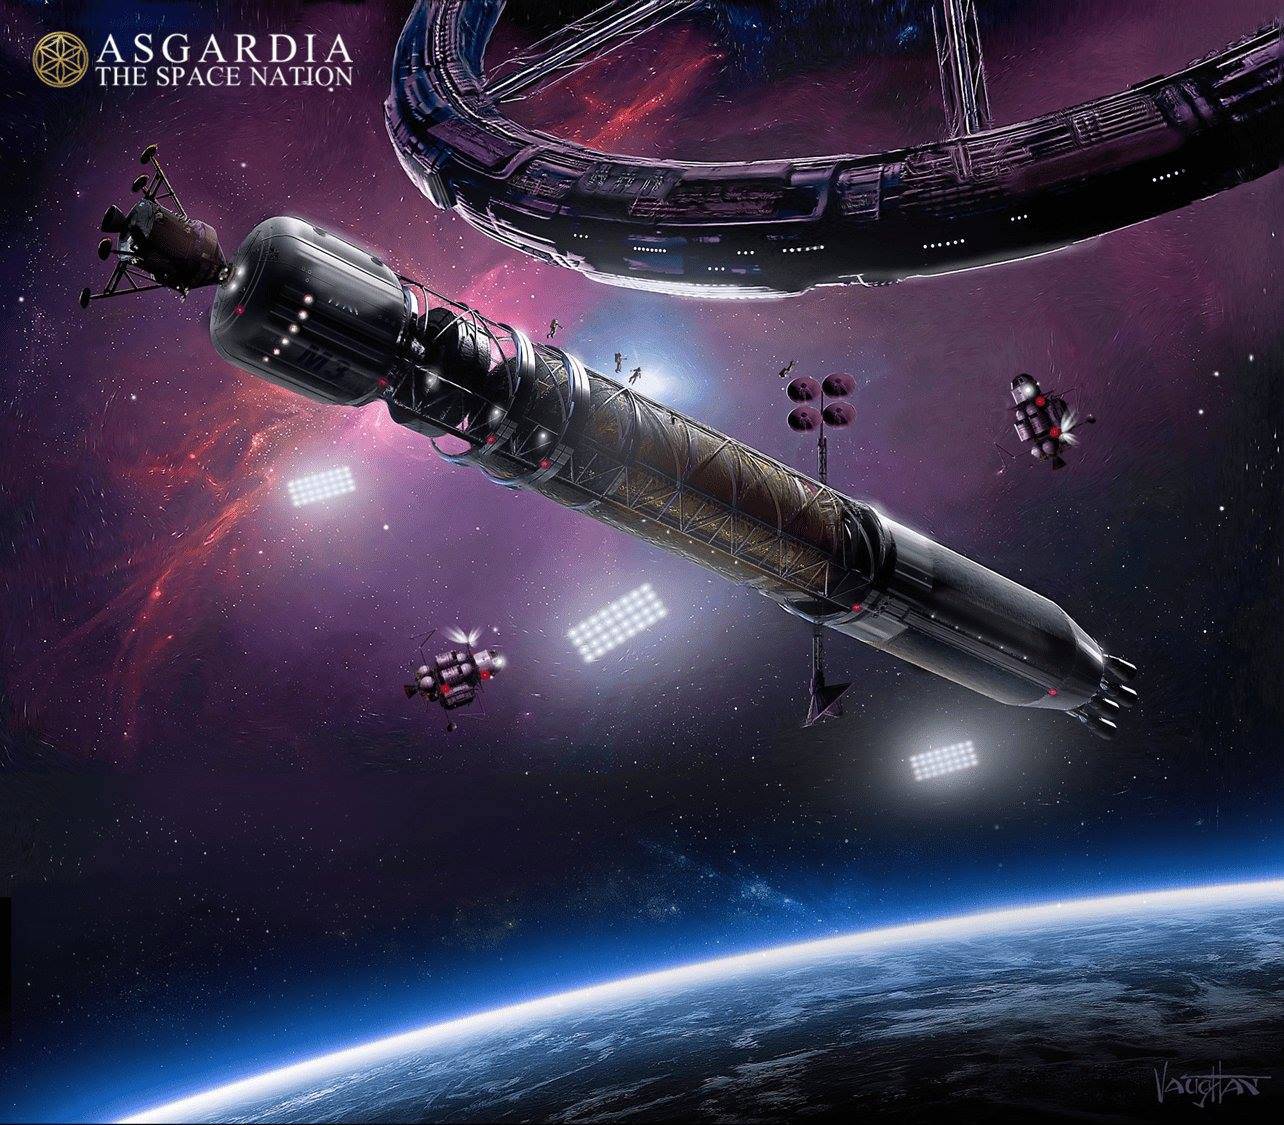 Svemirska nacija Asgardia već ovog ljeta poletjet će u orbitu